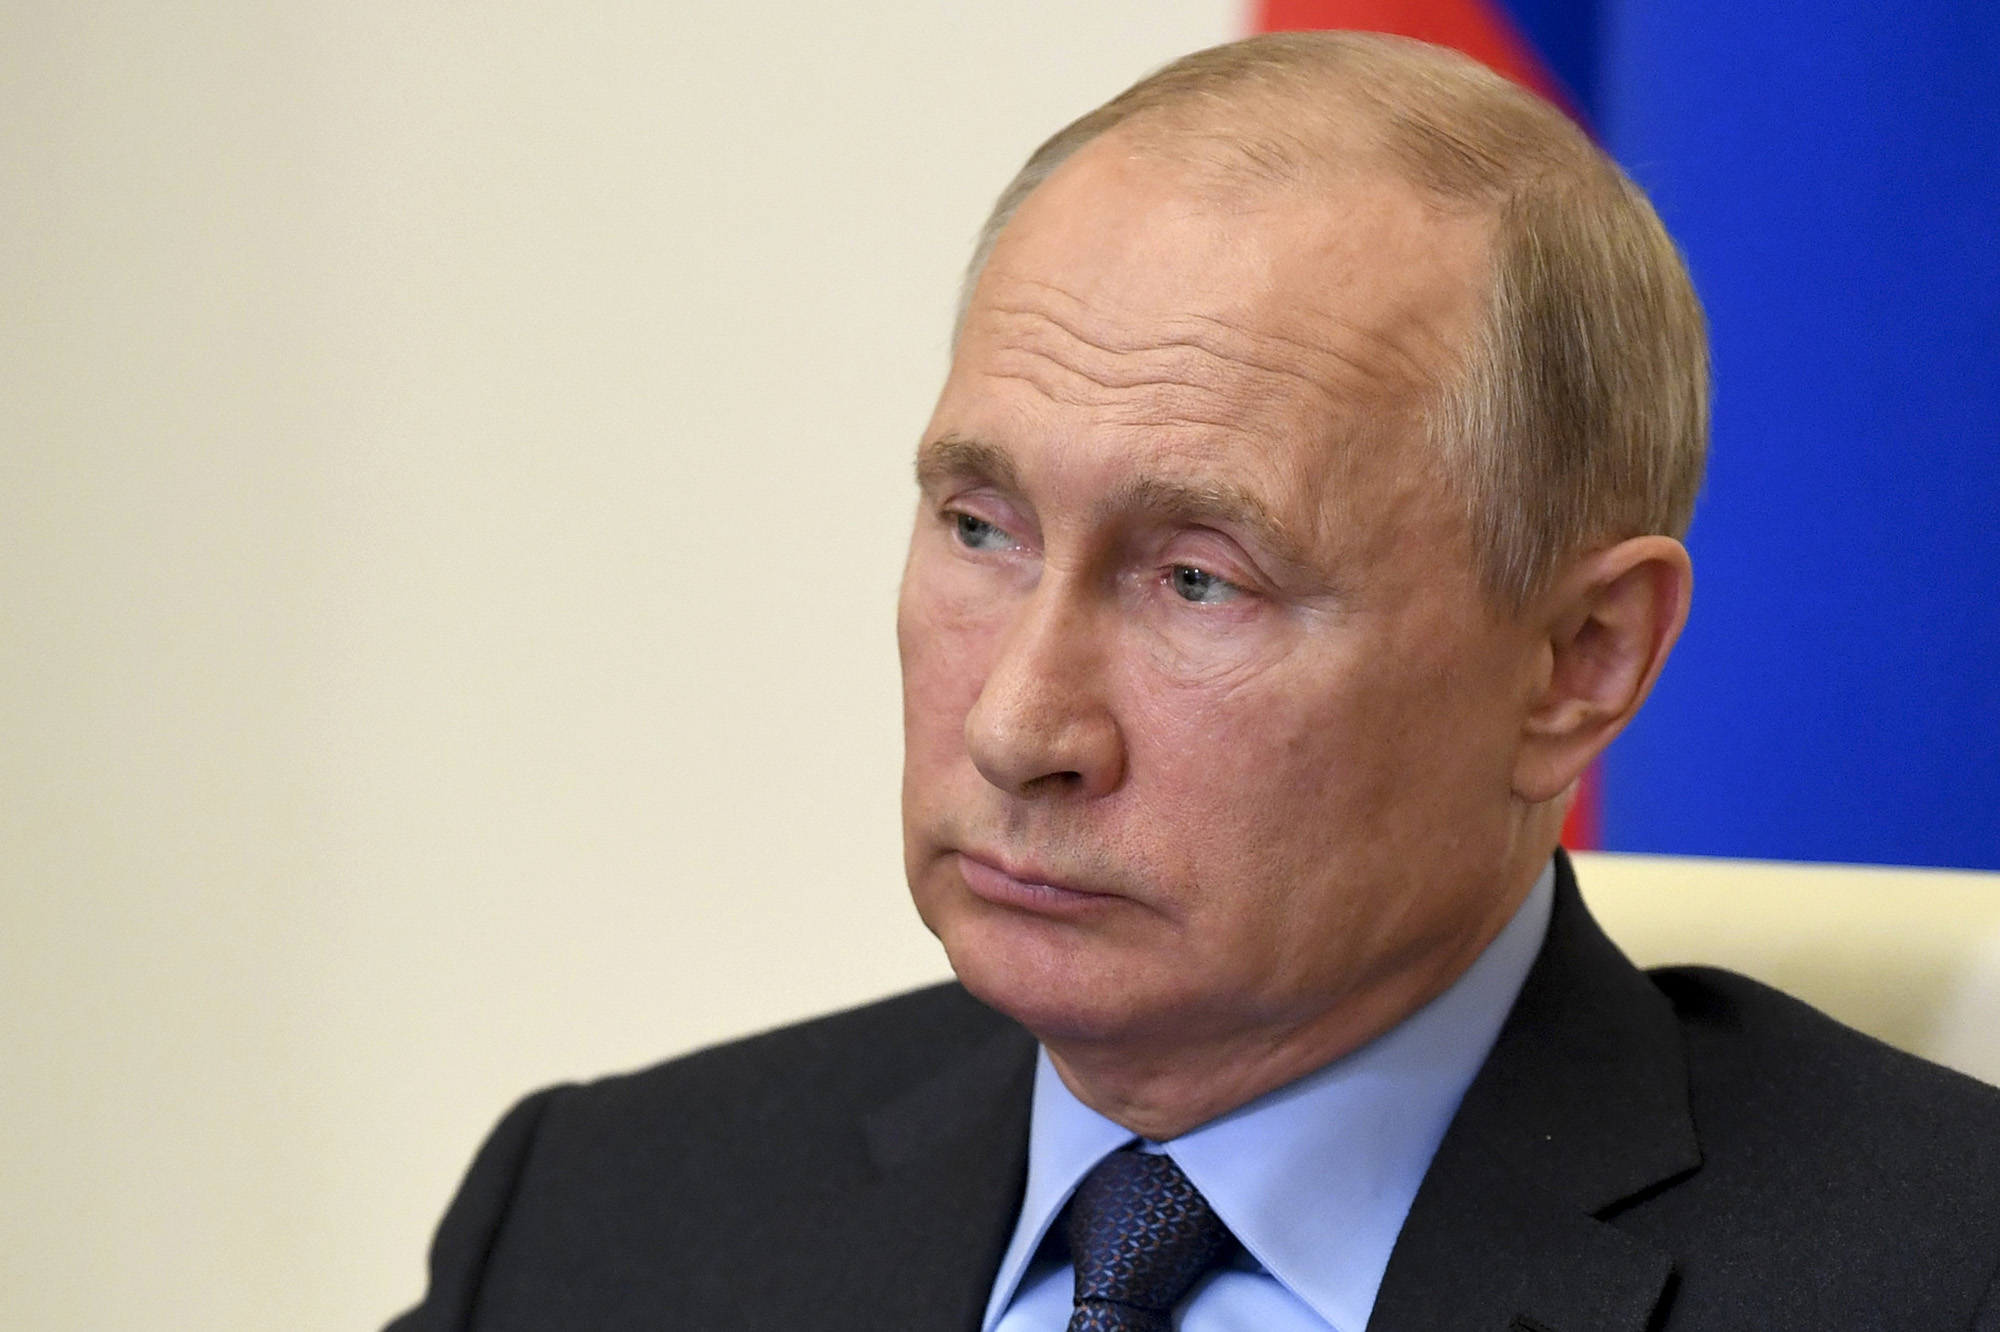 Putin: Protests and coronavirus present U.S. ‘inner crises’